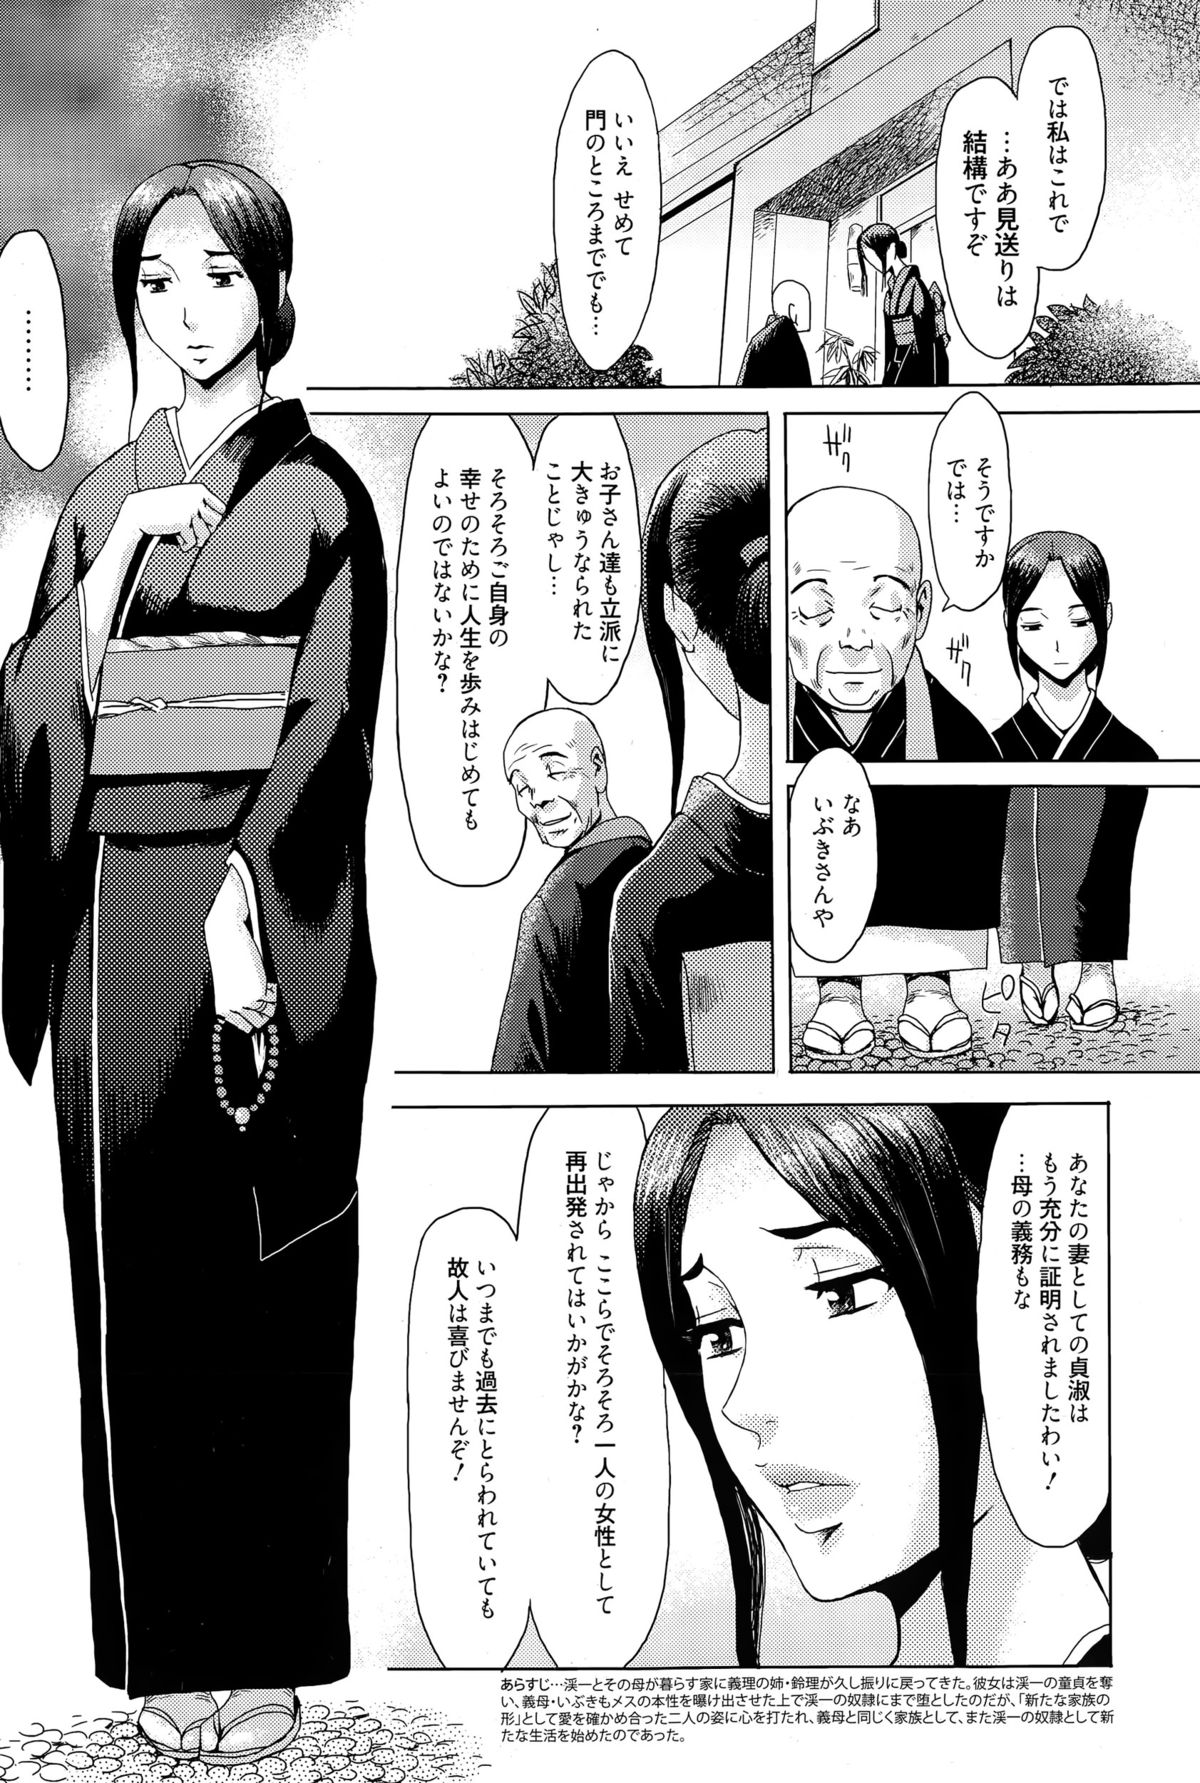 Manga Bangaichi 2015-05 page 7 full